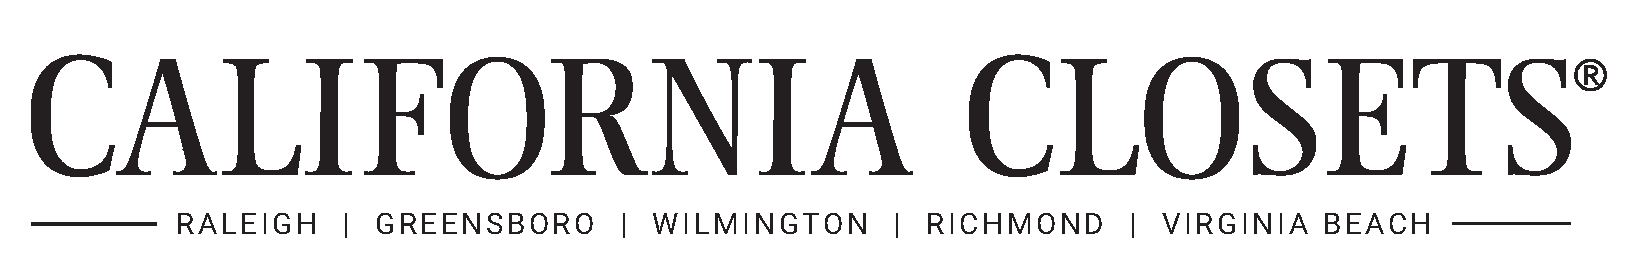 California Closets NC & VA Logo